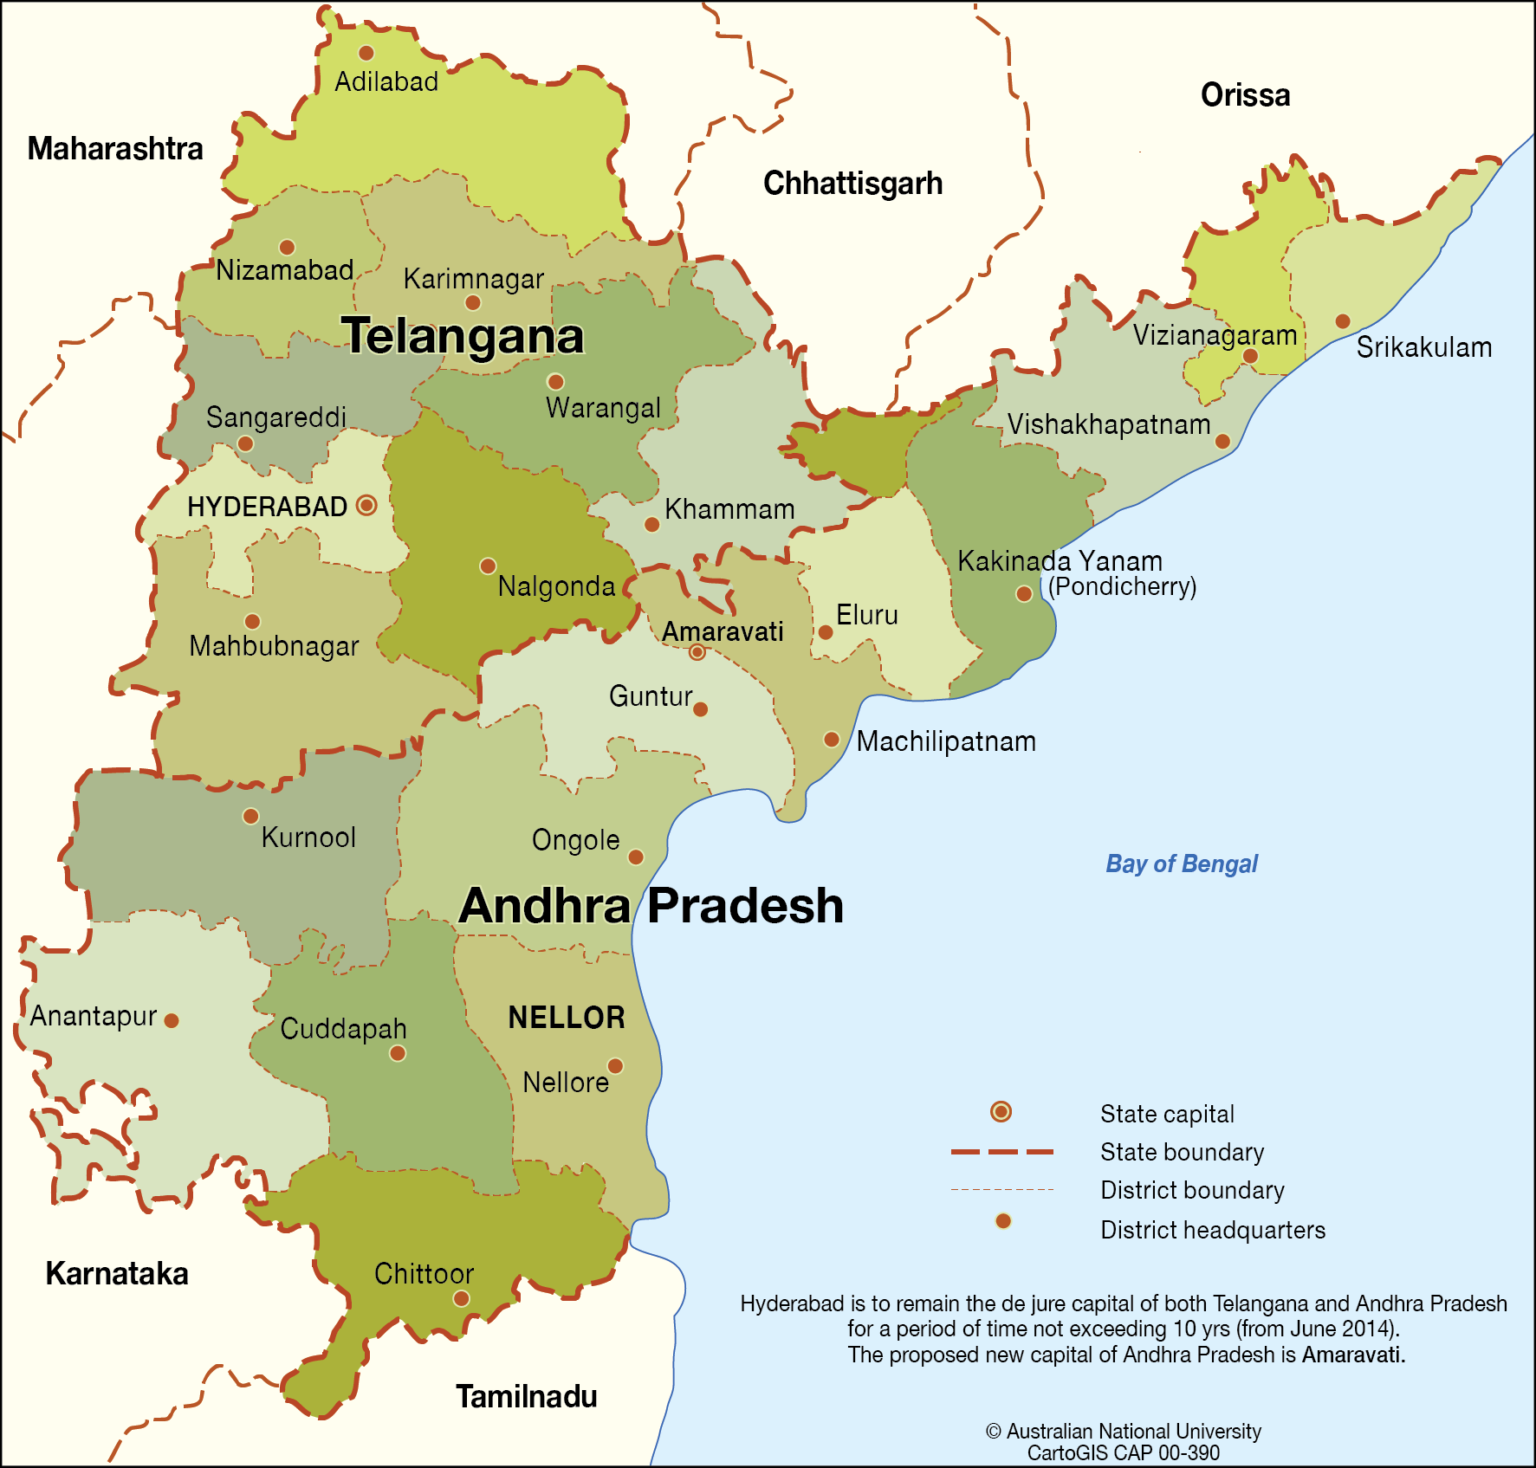 Andhra Pradesh has history of shifting capitals